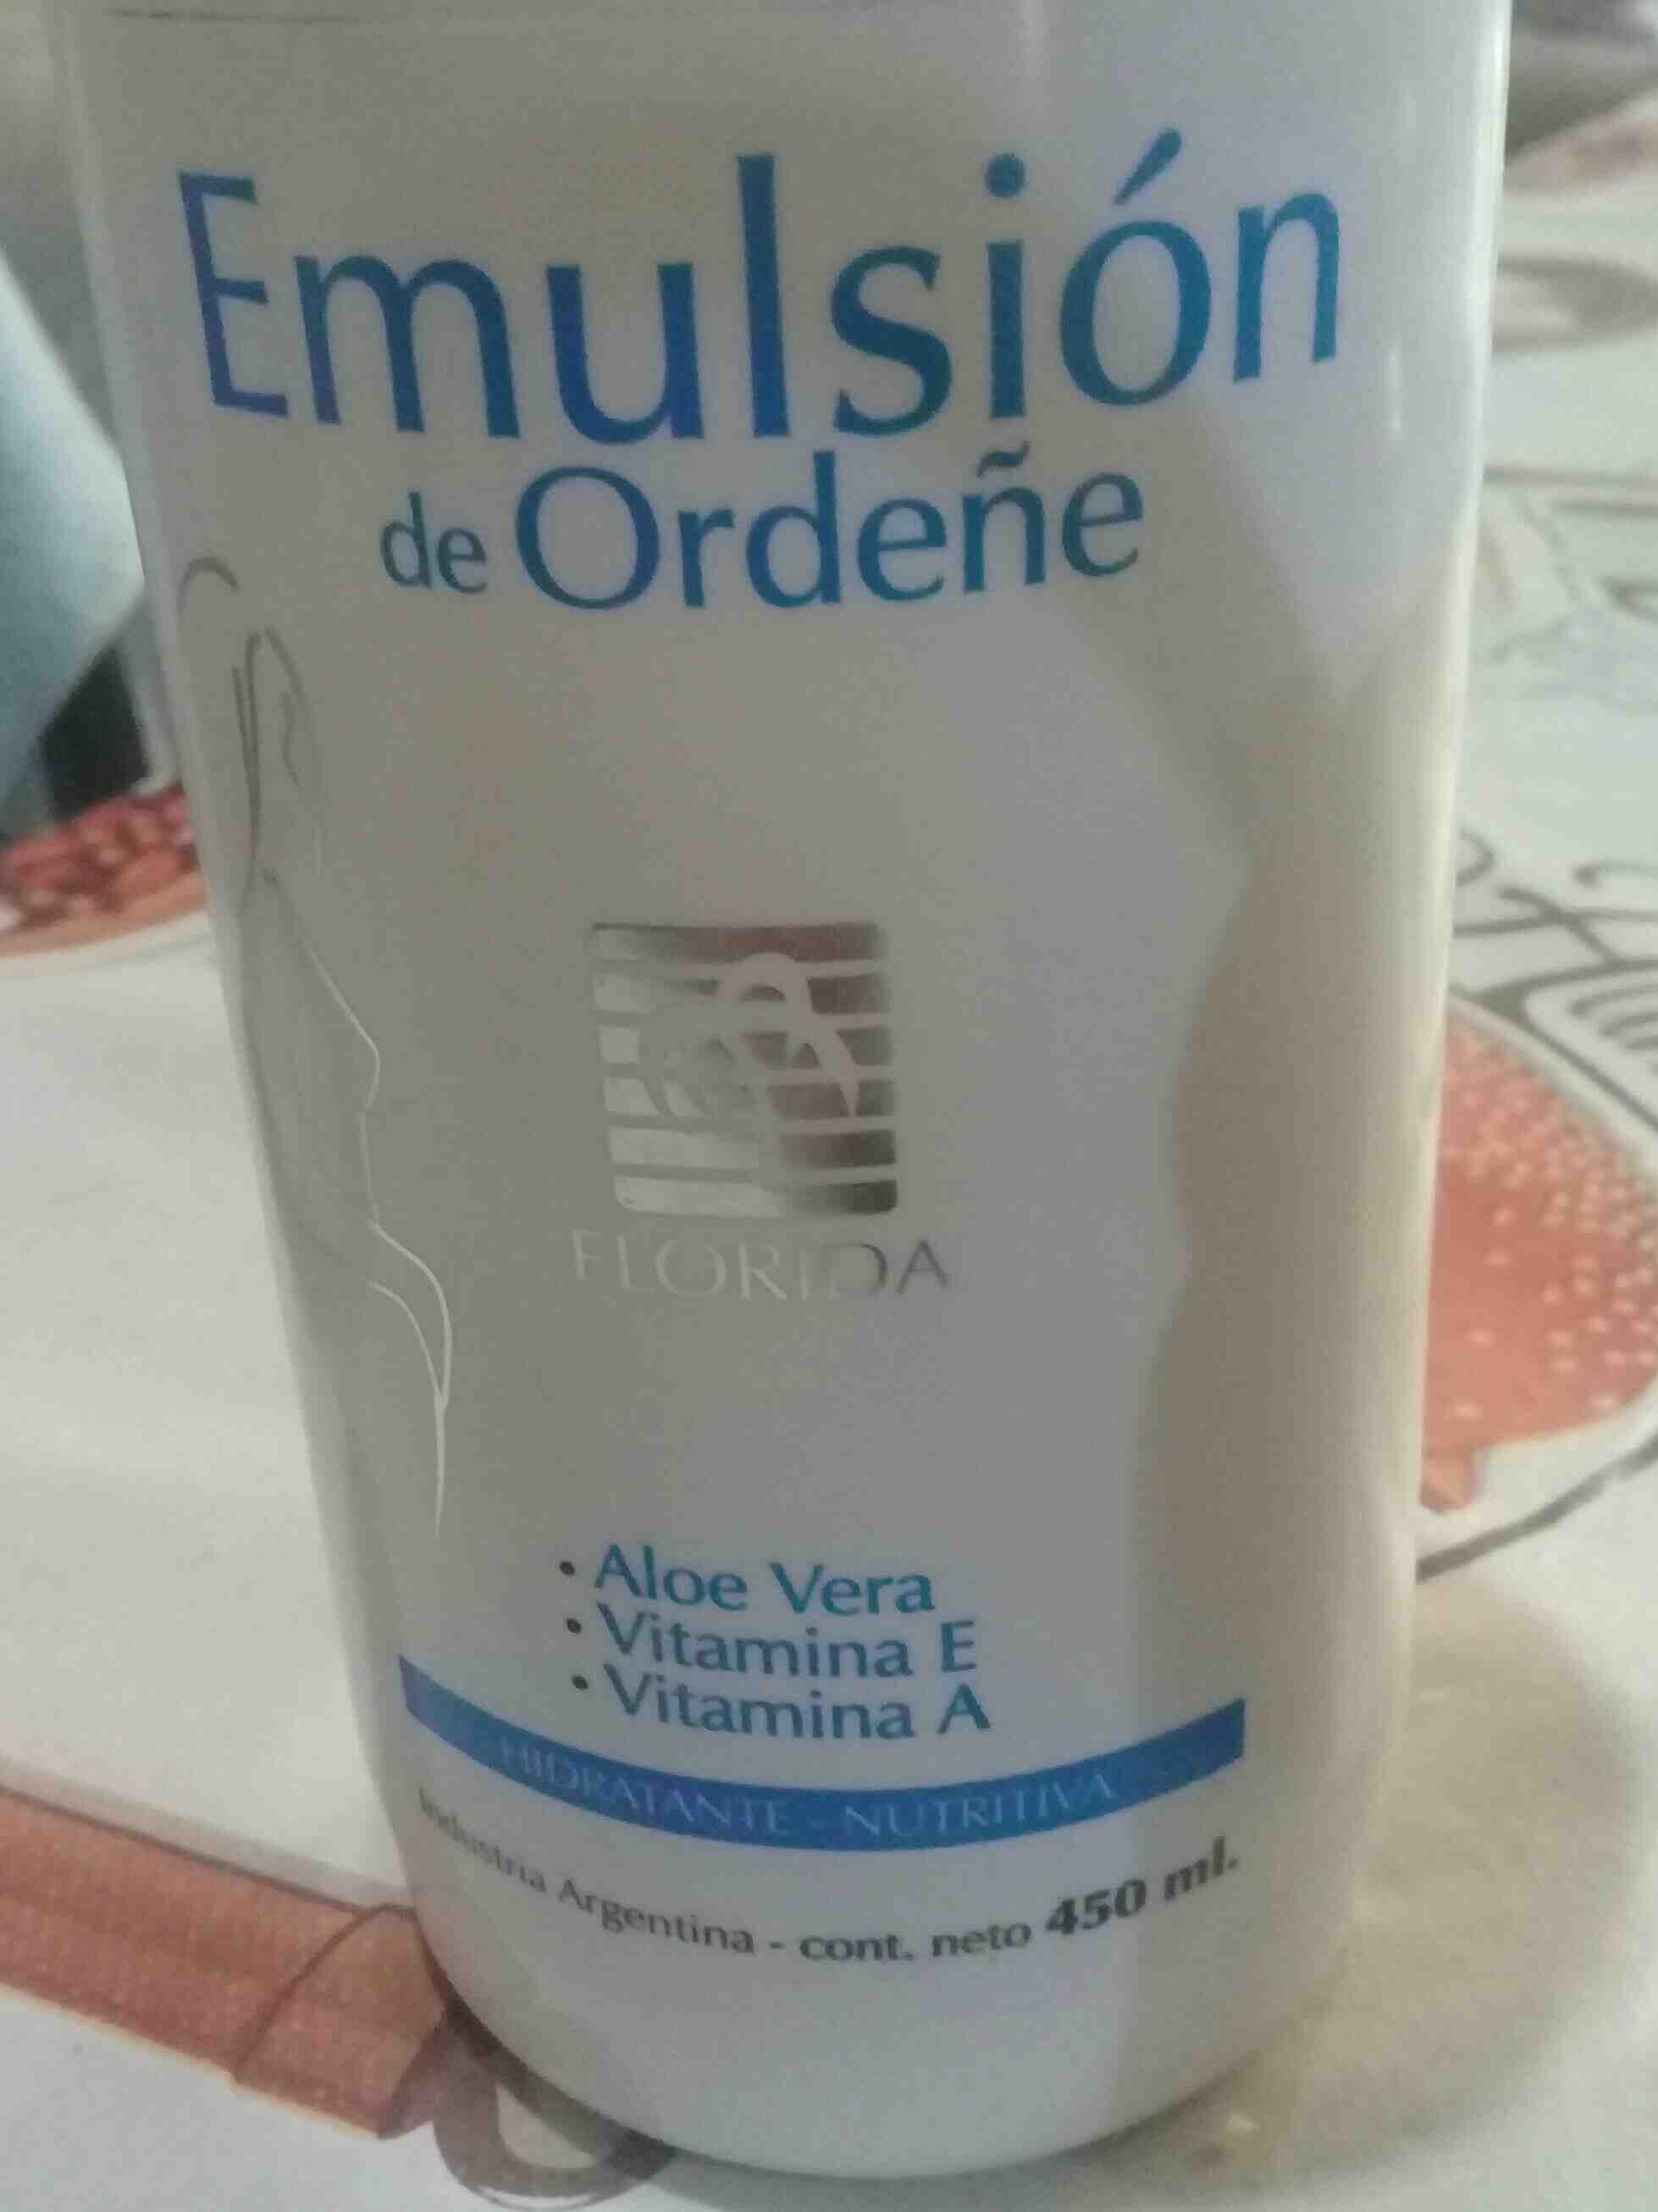 Emulsion de Ordeñe - Produkt - en